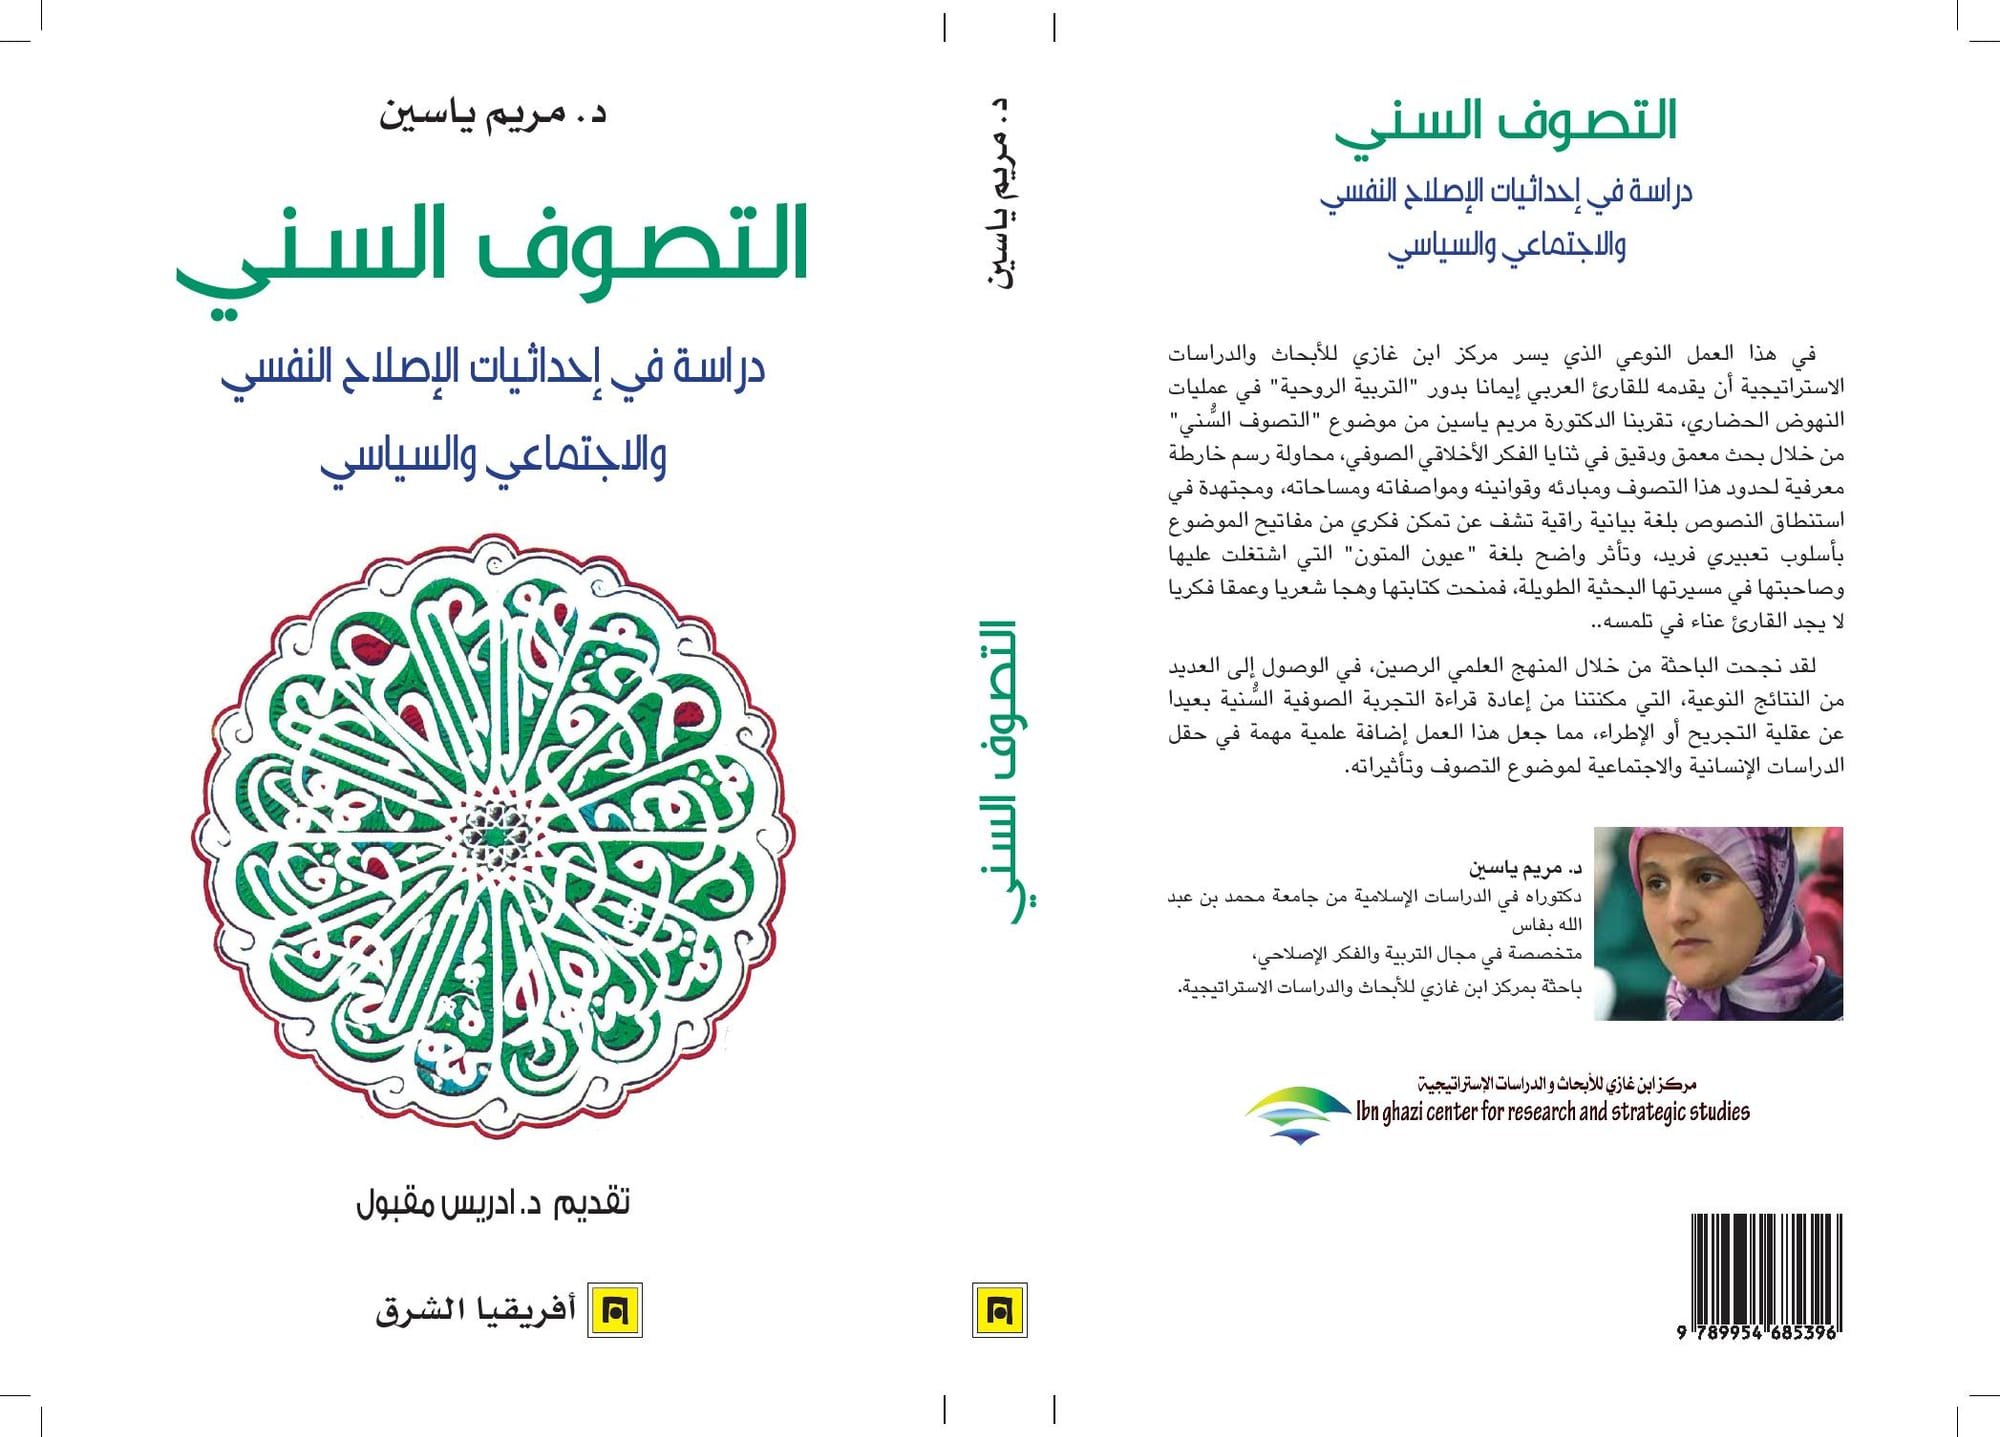 التصوف السني: دراسة في إحداثيات الإصلاح التربوي والاجتماعي والسياسي(مريم ياسين)